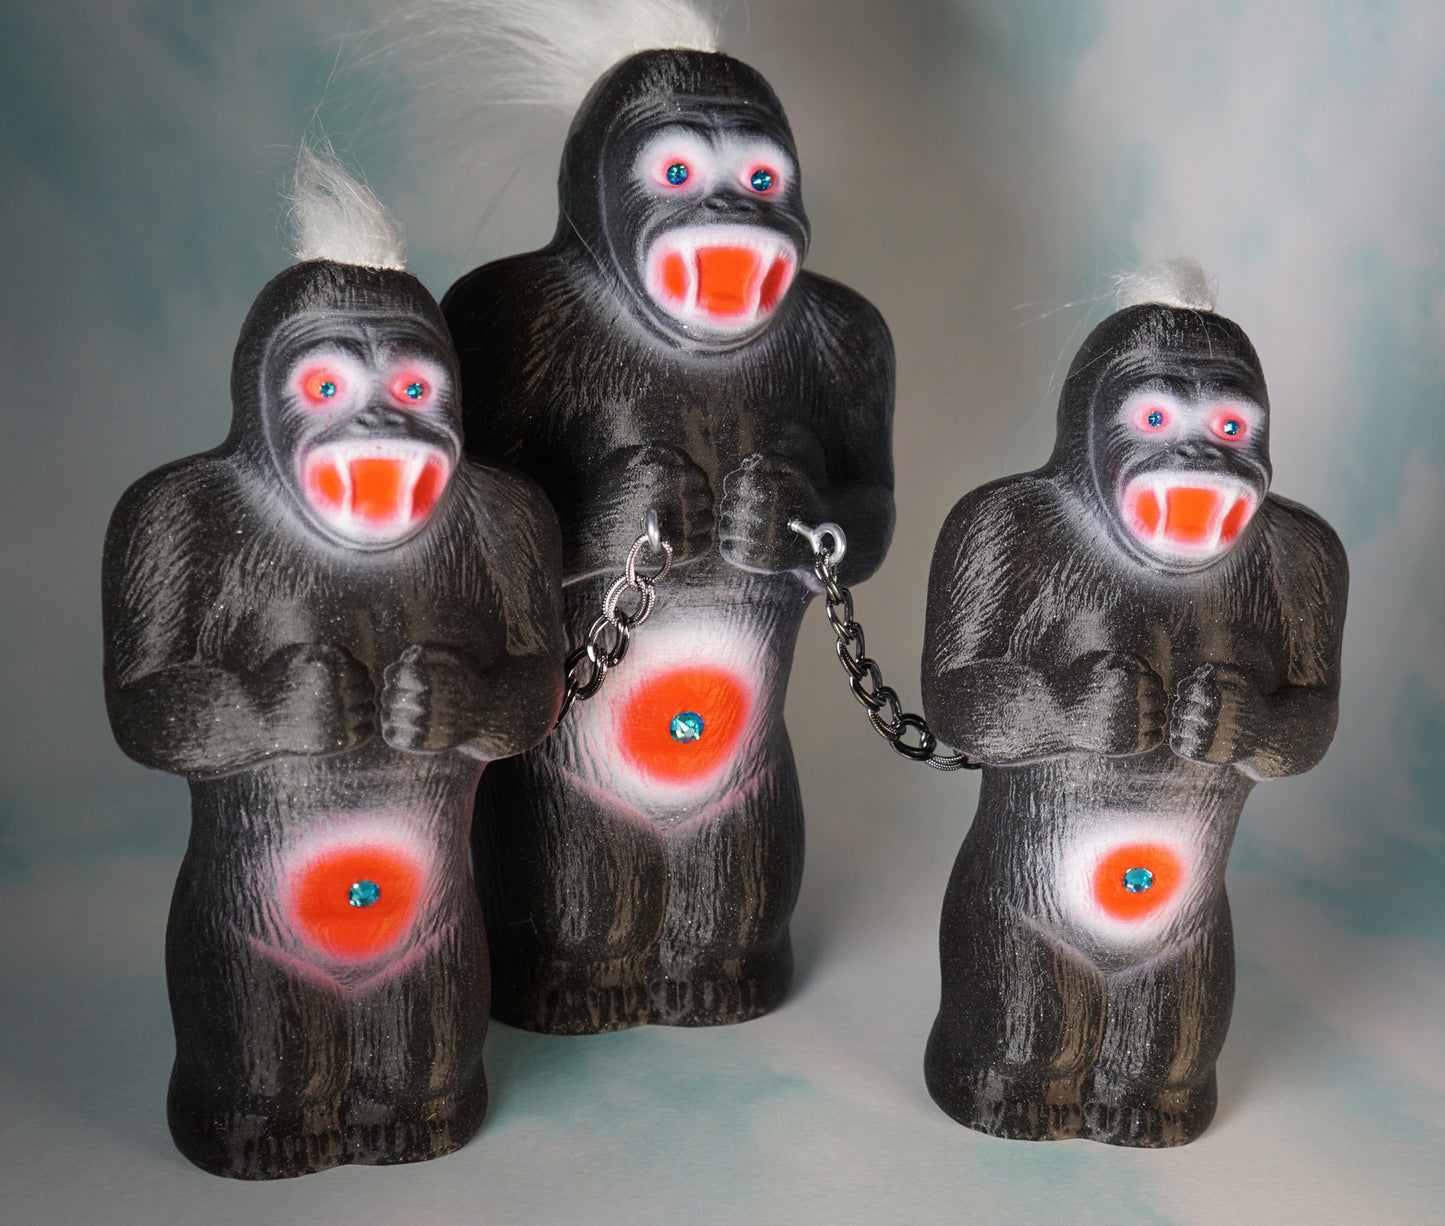 The Black Glitter Ape Gang